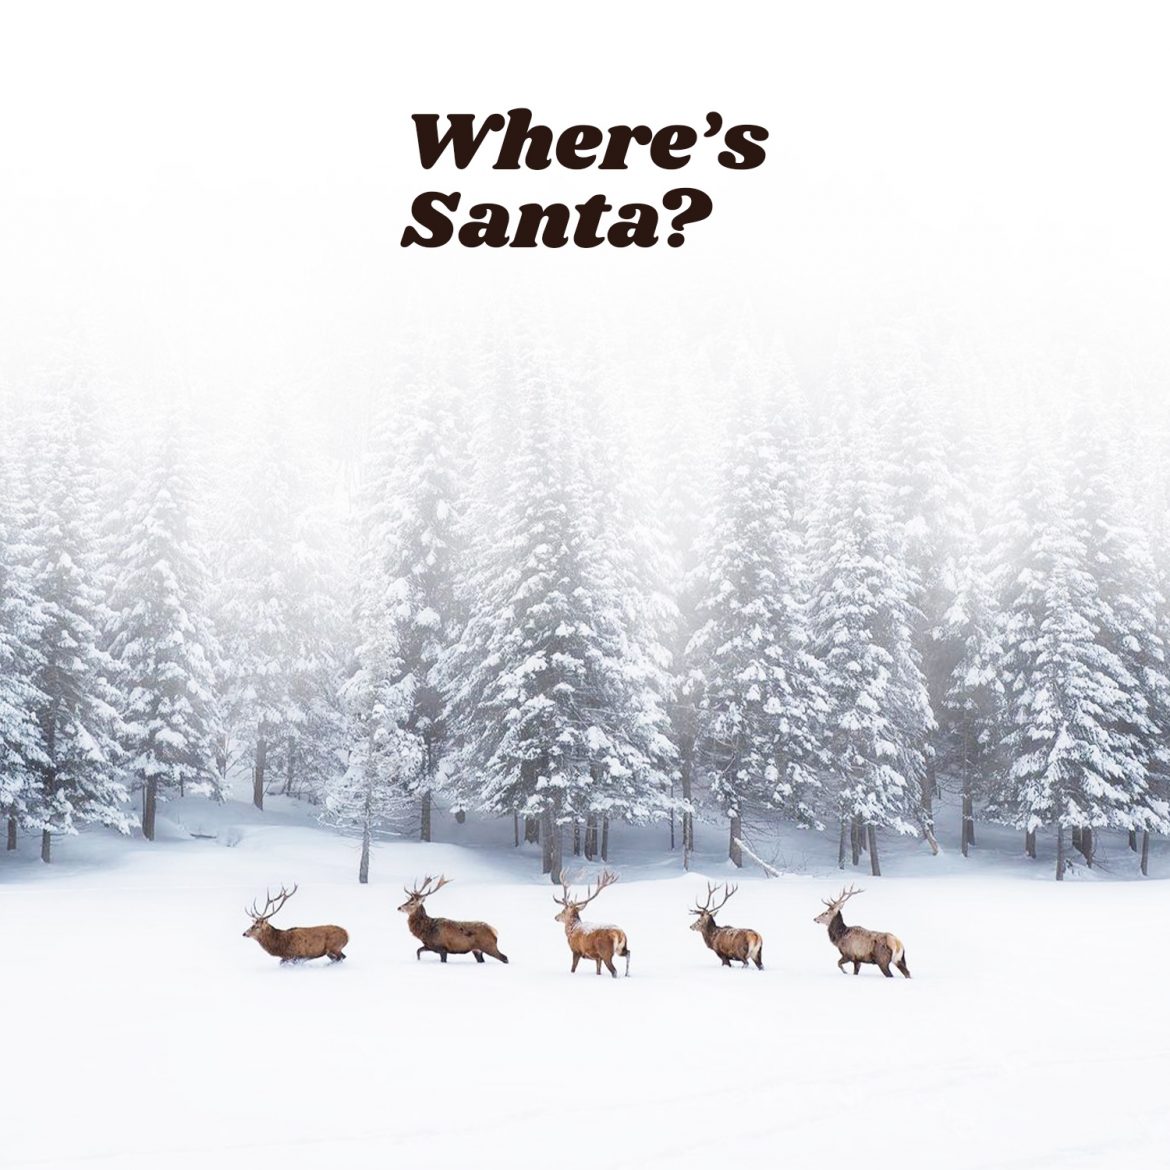 Where’s Santa?